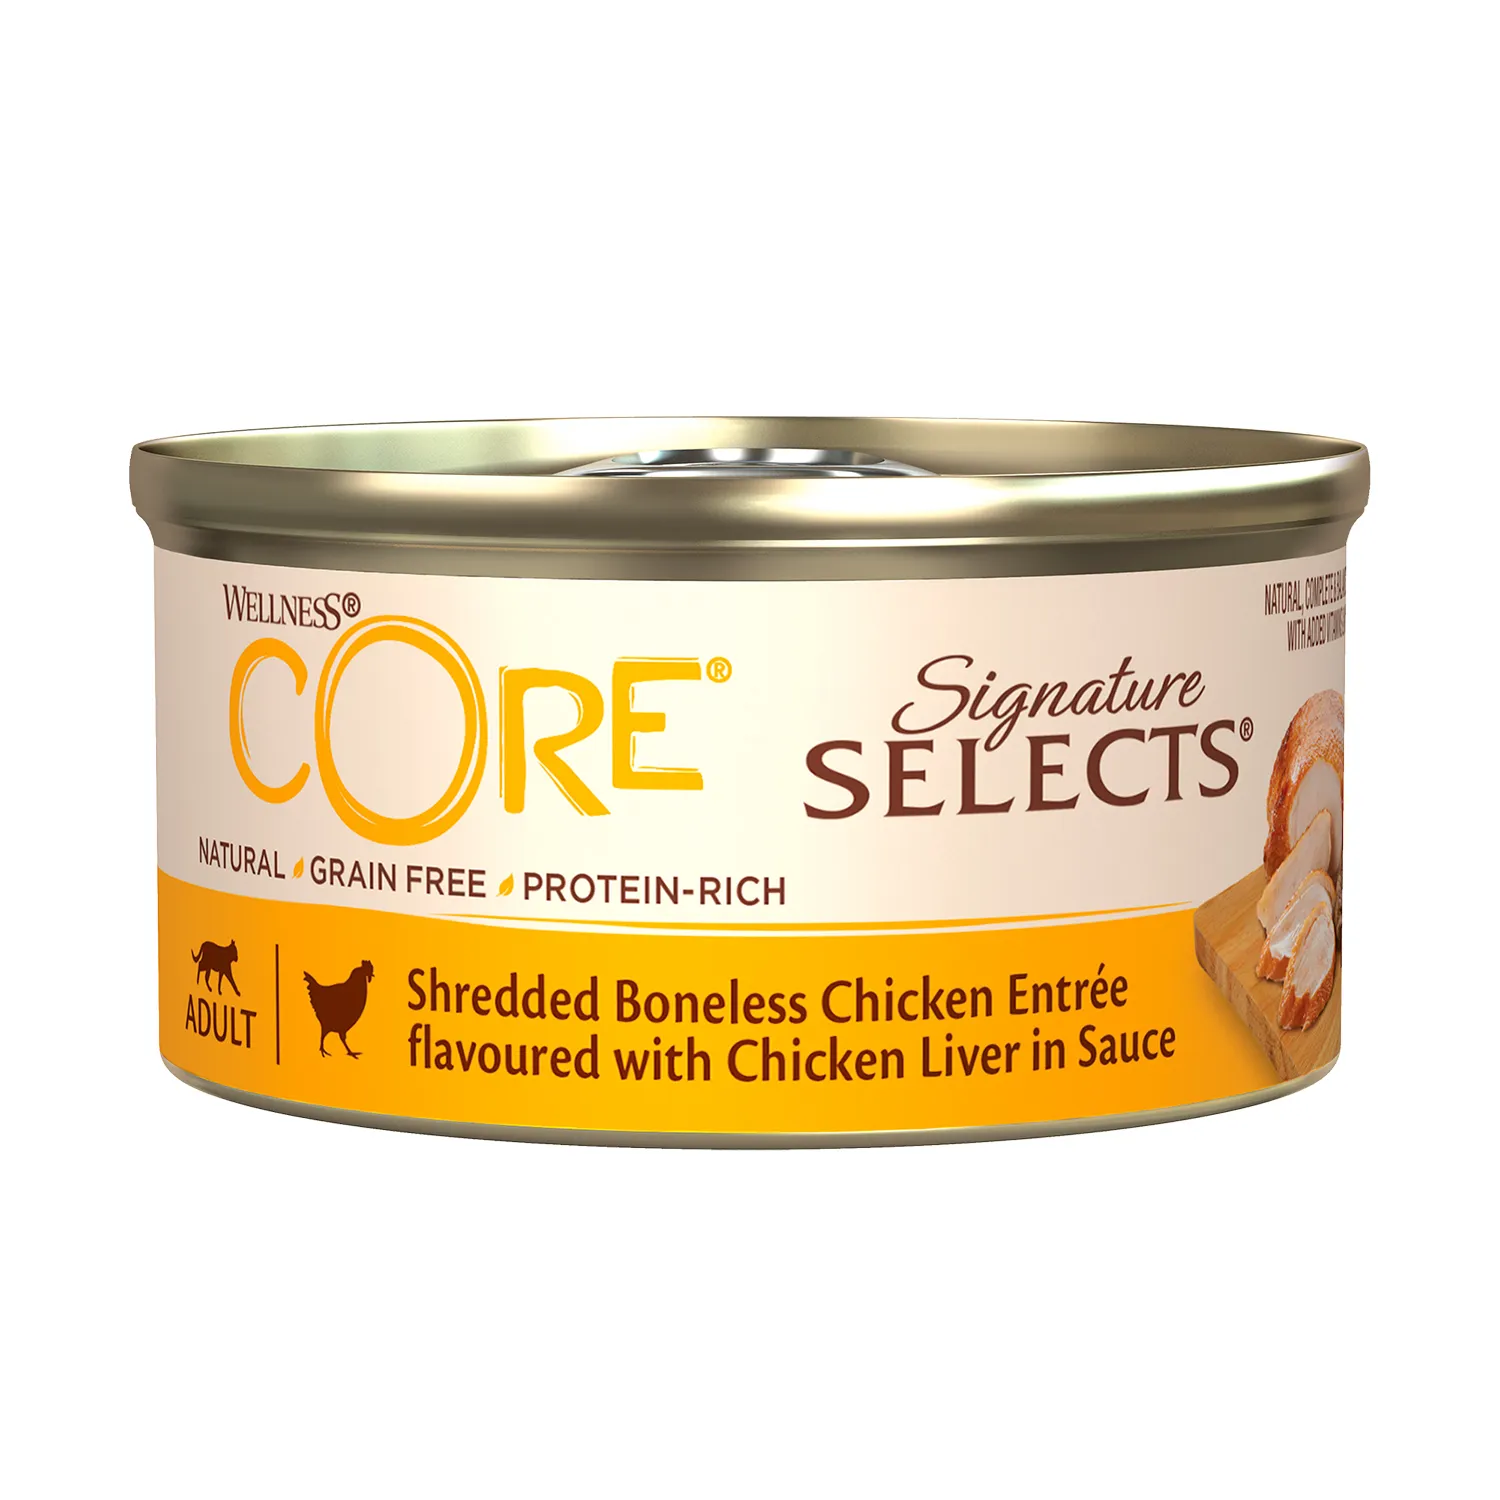 Влажный корм CORE SIGNATURE SELECTS для кошек, из курицы с куриной печенью в виде фарша в соусе, консервы 79 г